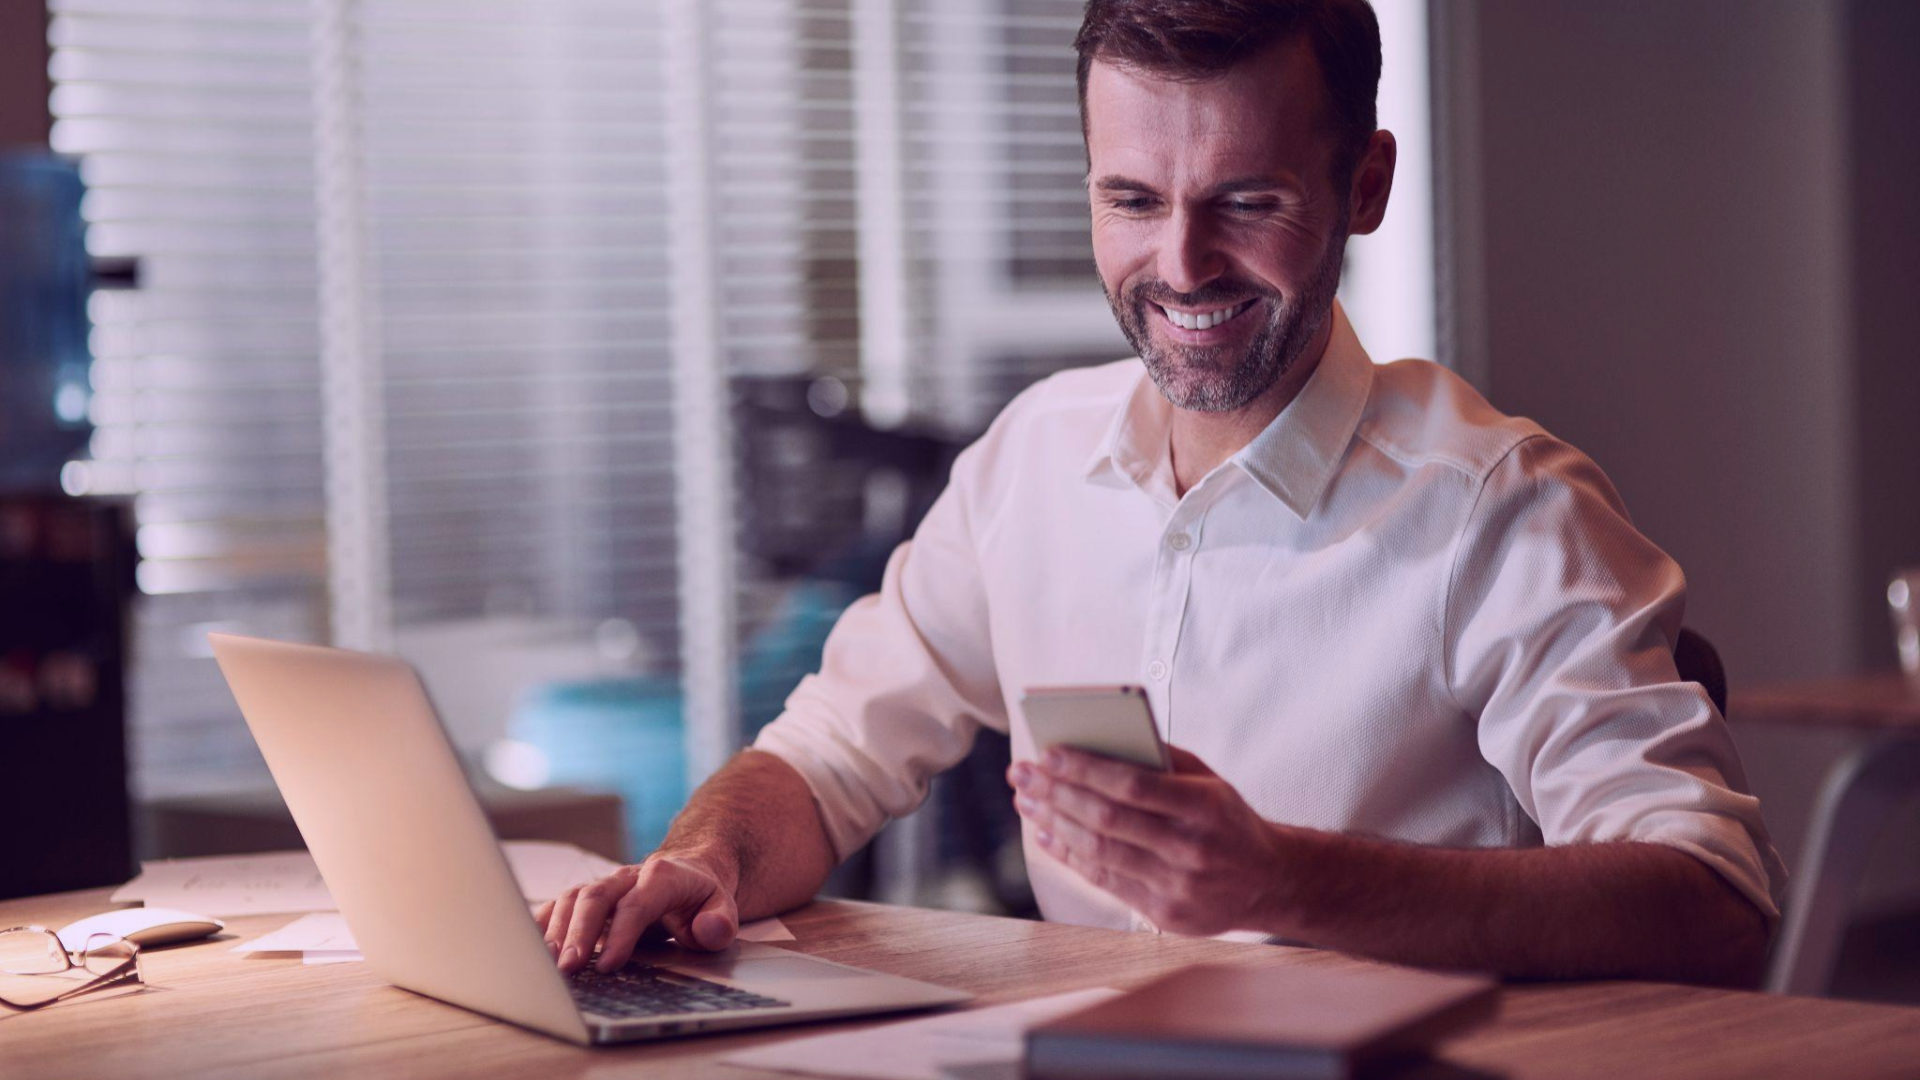 Homem sorridente sentado à mesa de trabalho, verificando o celular enquanto digita em um laptop, refletindo a eficácia do uso de estratégias omnichannel no varejo para impulsionar as vendas físicas.